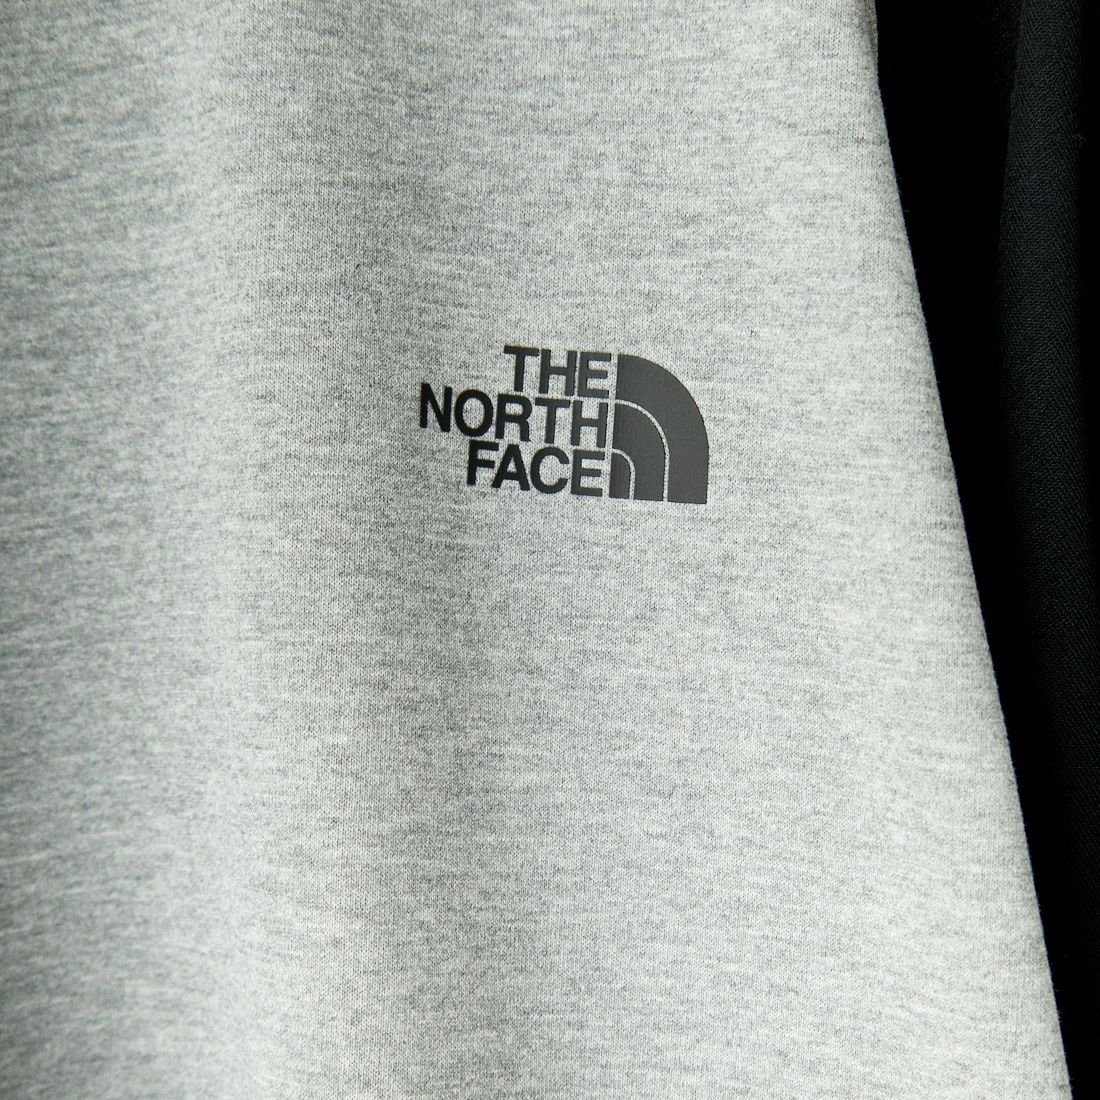 THE NORTH FACE [ザ ノースフェイス] クォータースリーブベースボールTシャツ [NT32476]